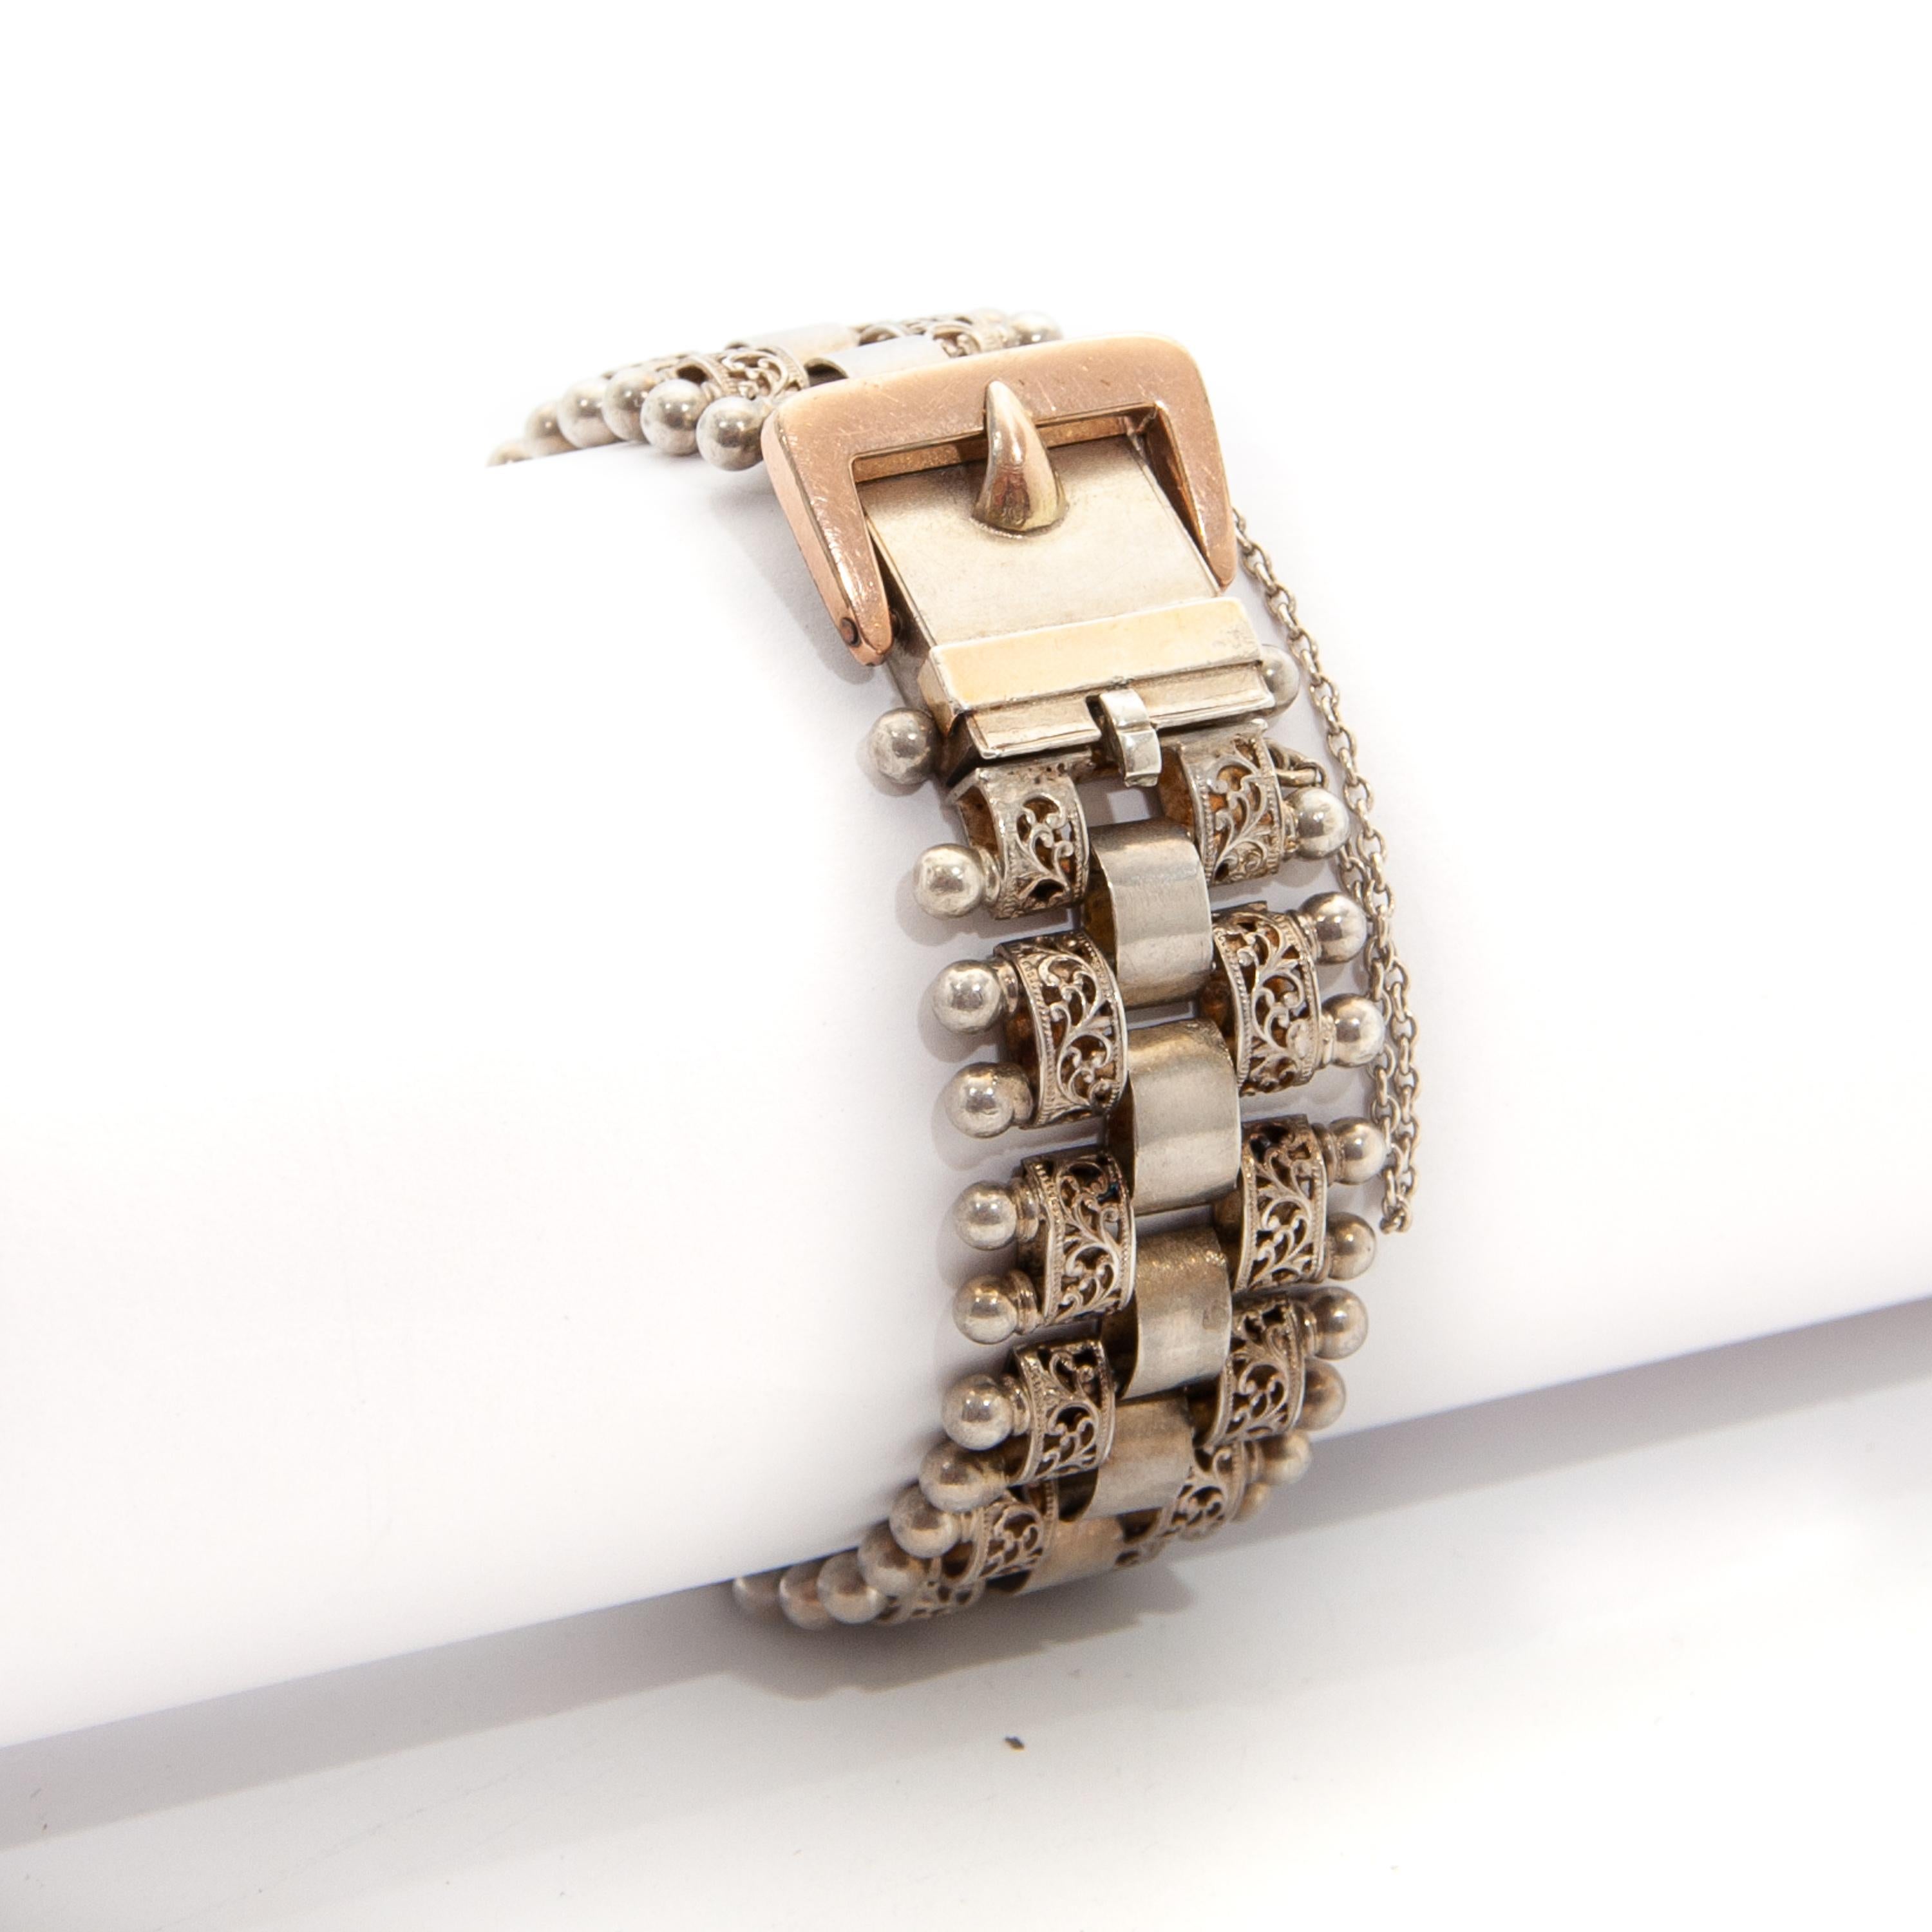 Ein wunderschönes antikes viktorianisches Gliederarmband mit Schnalle aus Silber und vergoldetem Roségold. Das flexible Band dieses Armbands hat ein durchbrochenes Design mit filigranen Gliedern und Kugeln auf der Außenseite. Die Innenglieder haben